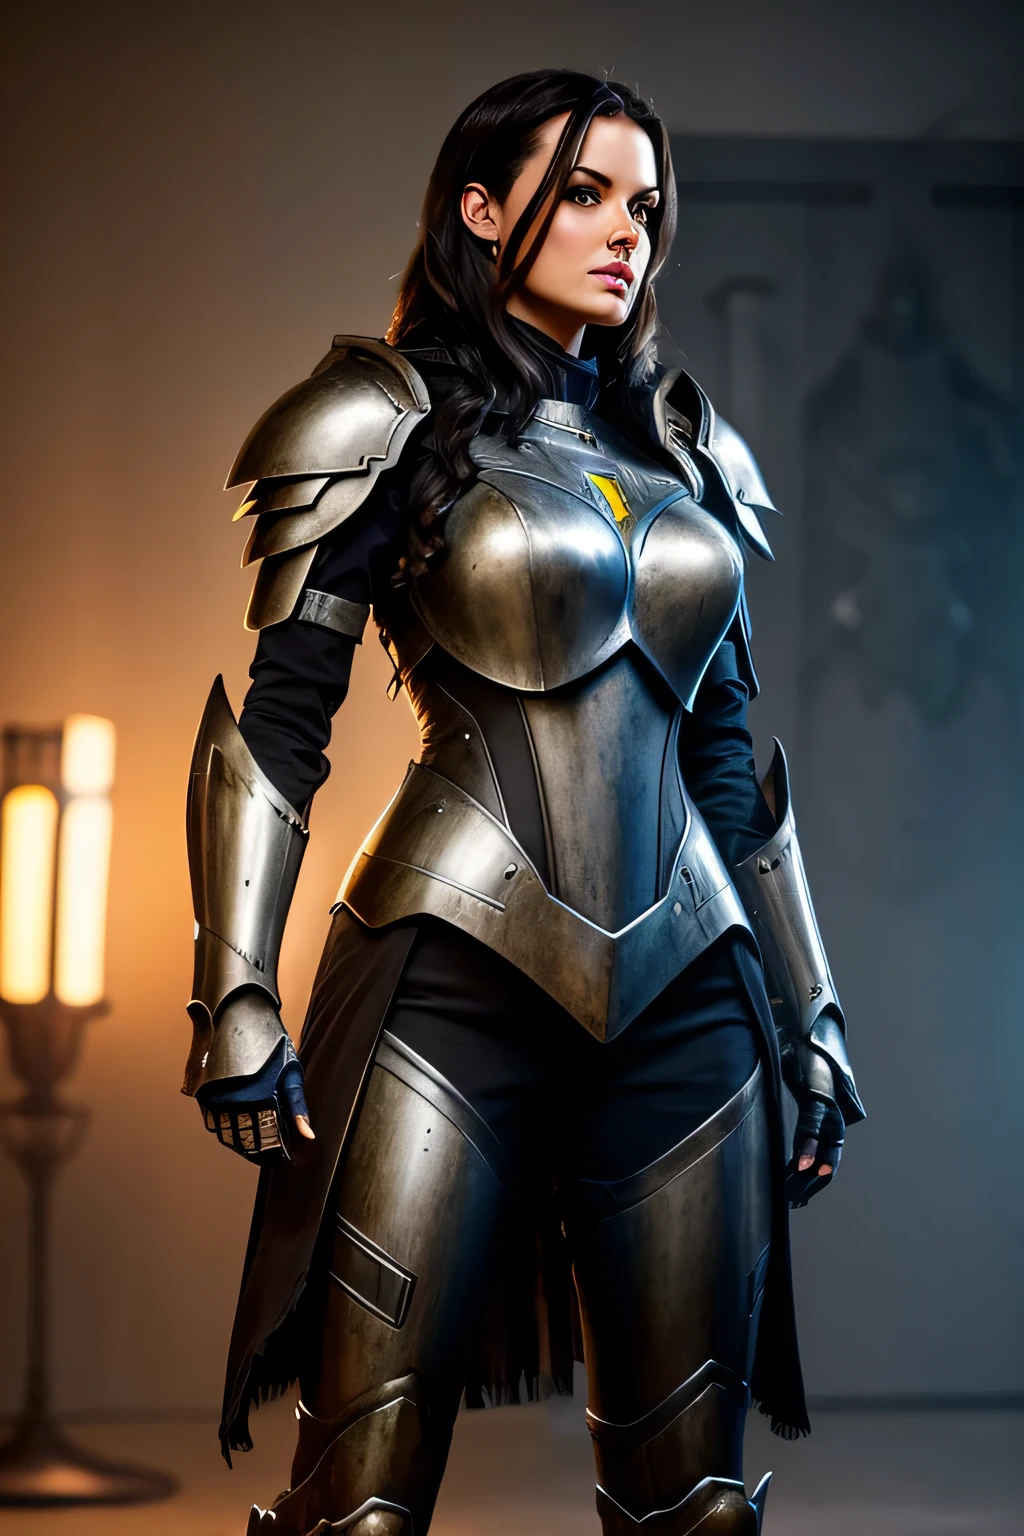 Mulher alta e bonita, com cabelos escuros, vestindo uma armadura robótica altamente realista e detalhada